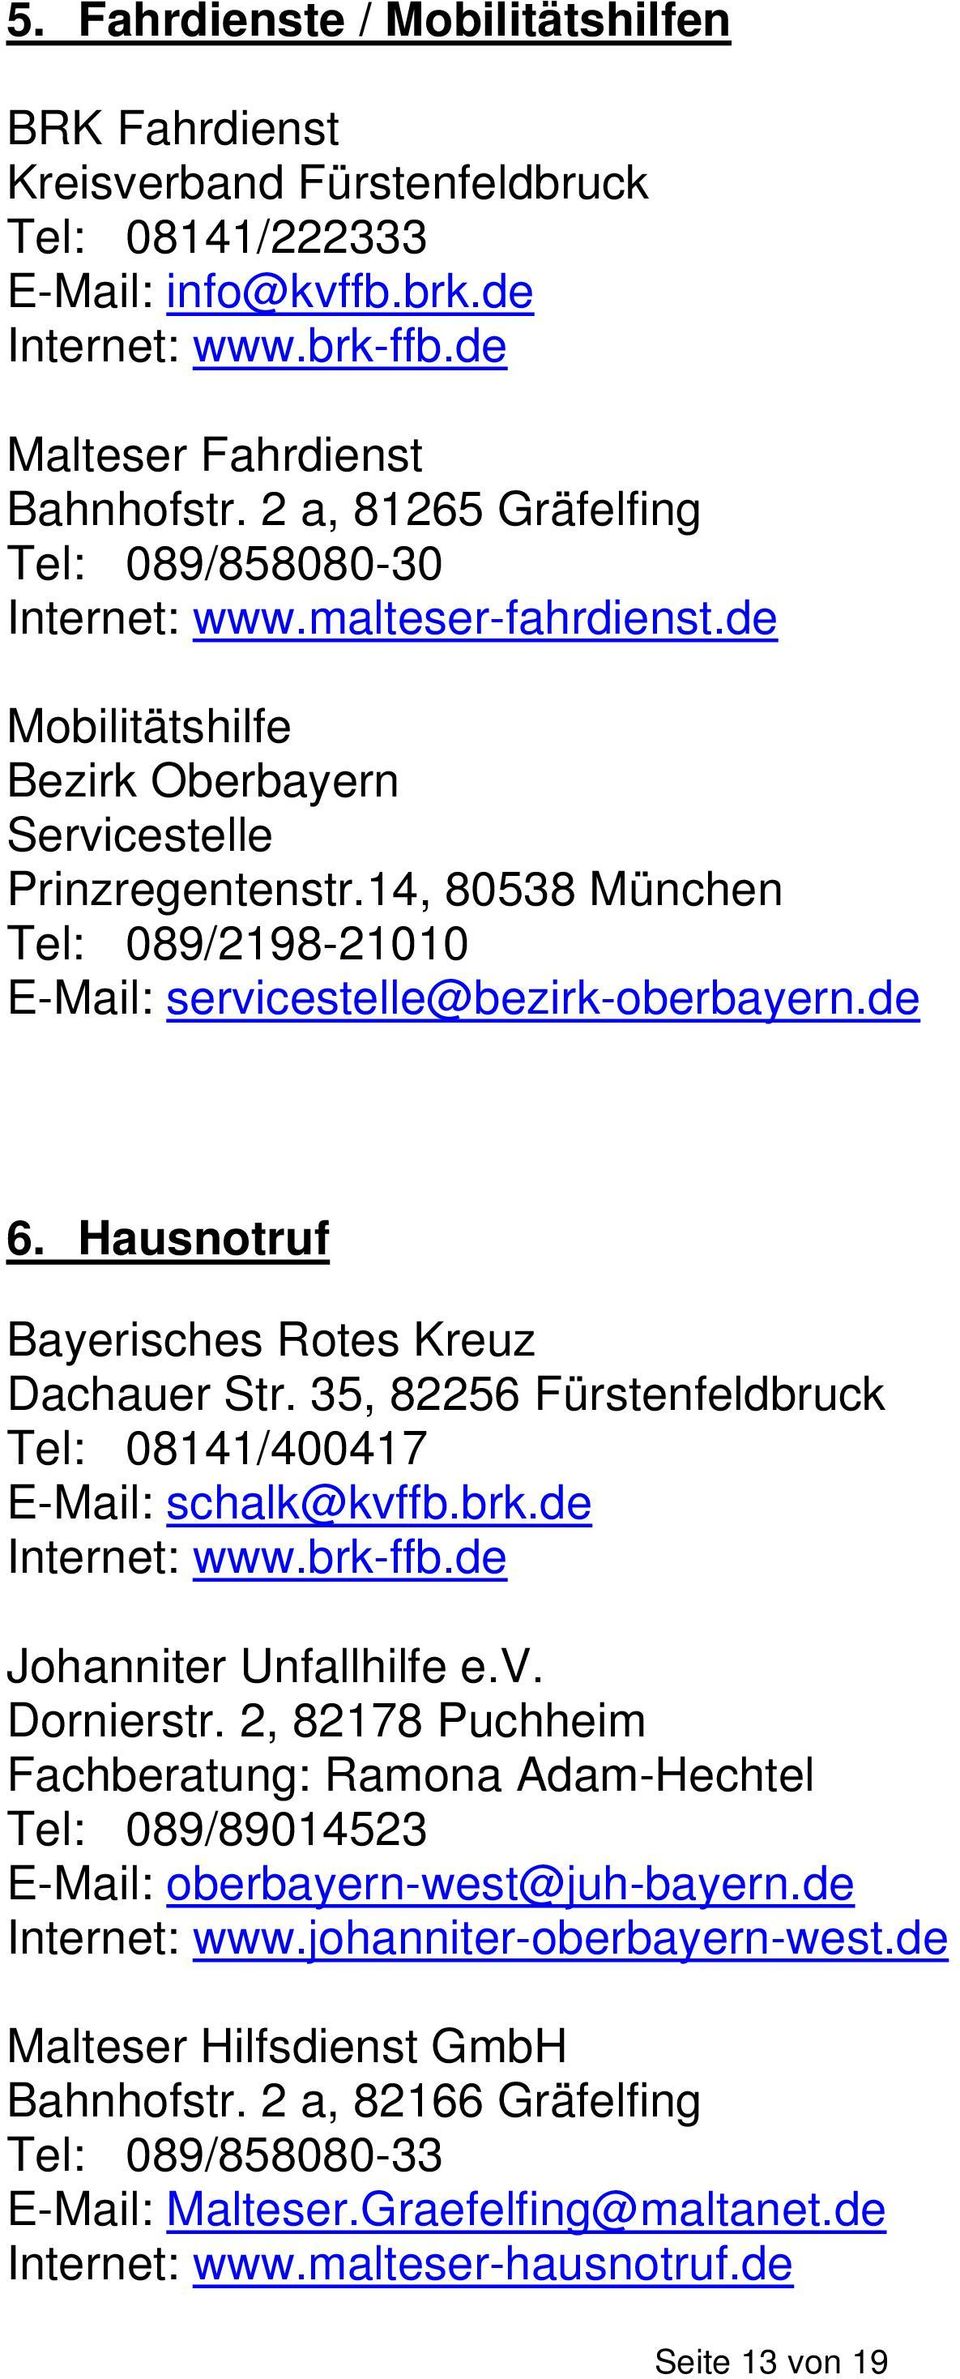 14, 80538 München Tel: 089/2198-21010 E-Mail: servicestelle@bezirk-oberbayern.de 6. Hausnotruf Bayerisches Rotes Kreuz Dachauer Str. 35, 82256 Fürstenfeldbruck Tel: 08141/400417 E-Mail: schalk@kvffb.